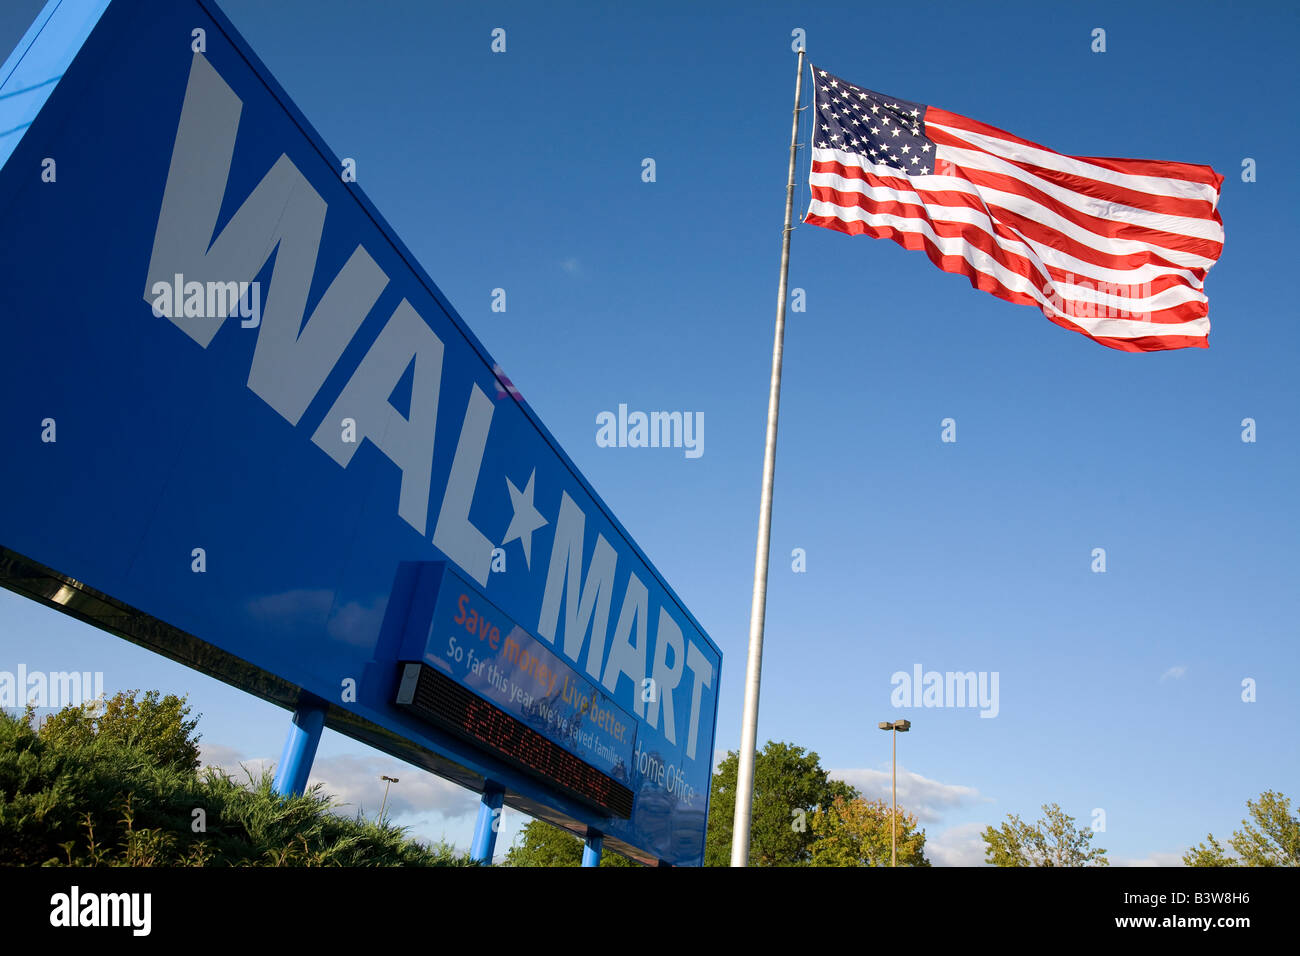 Walmart Stores Inc. Innenministerium für seine globalen Einzelhandel speichert Betrieb in Bentonville, Arkansas, Vereinigte Staaten von Amerika Stockfoto